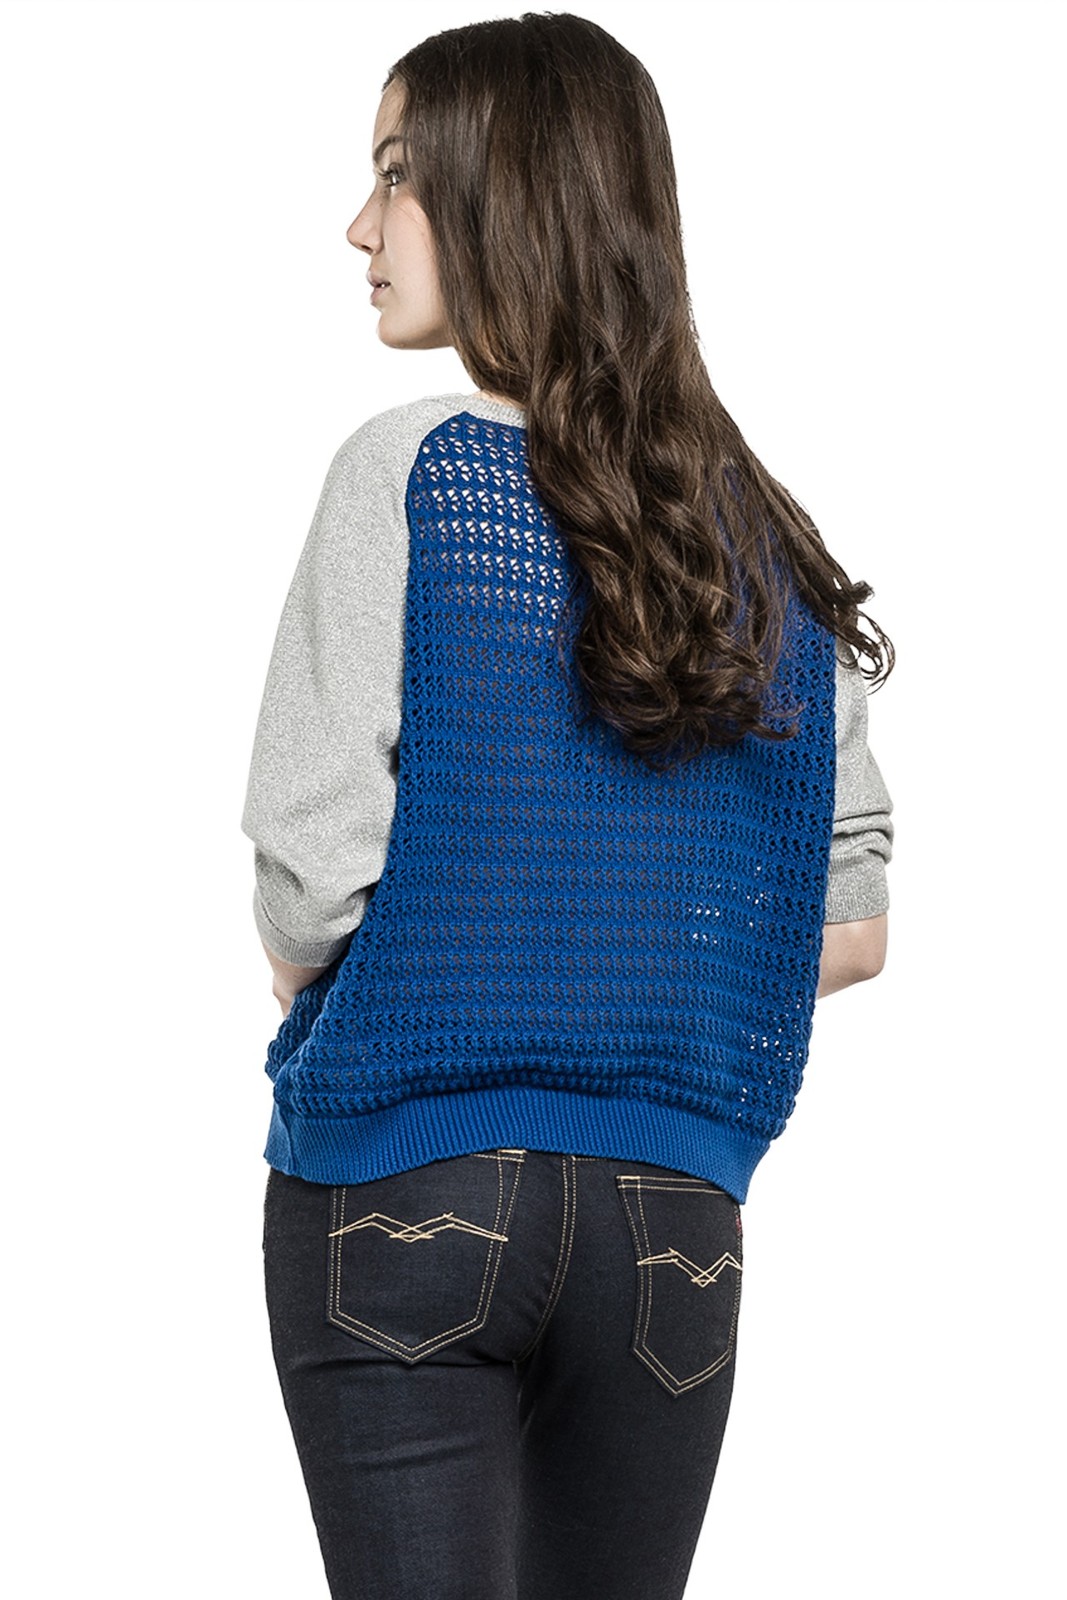 Replay női kék-szürke viszkóz-poliészter-pamut pulóver 2015 fotója